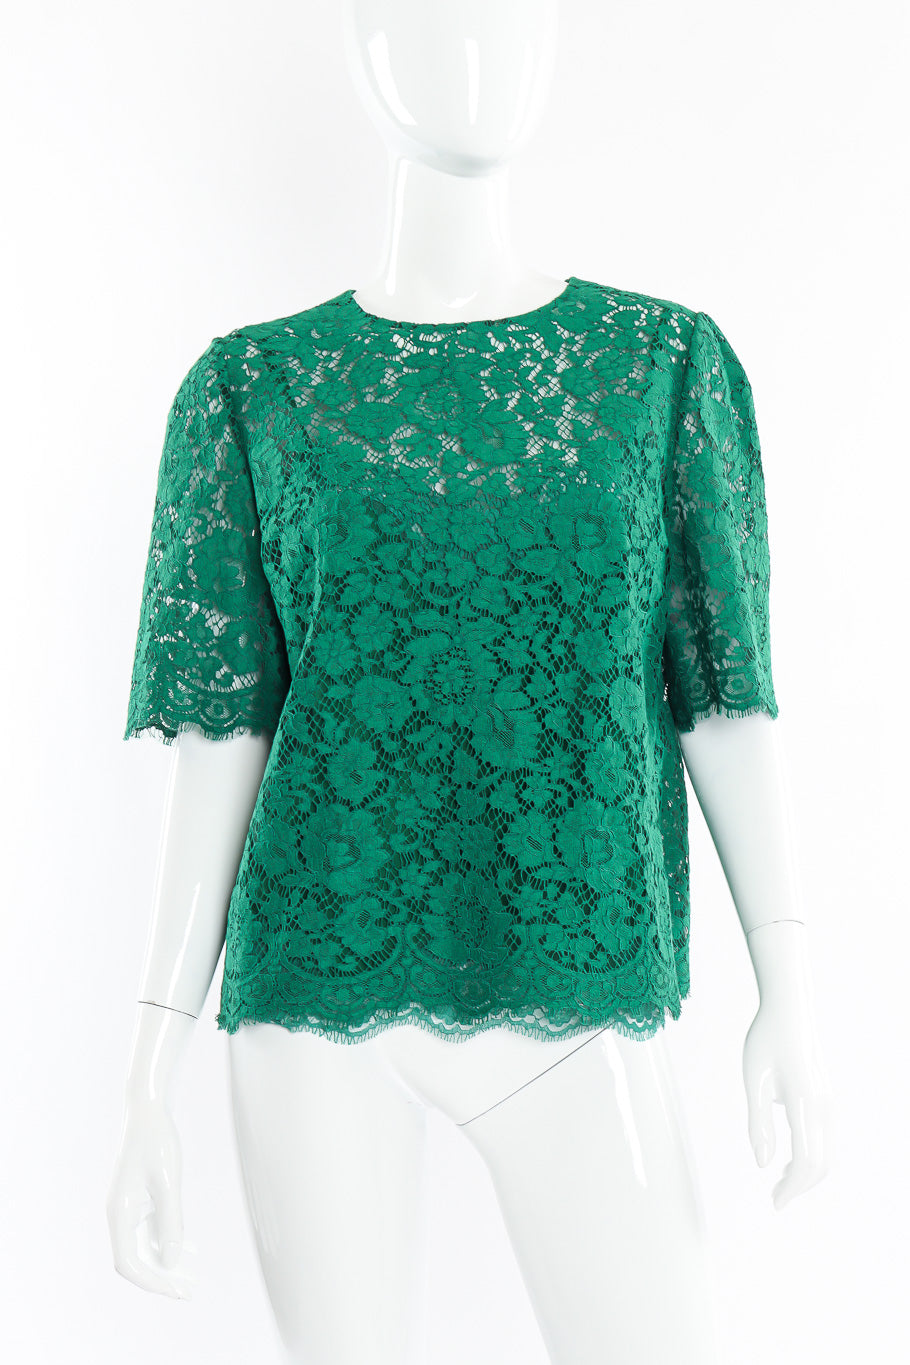 Dolce & Gabbana soutache lace top on mannequin @recessla